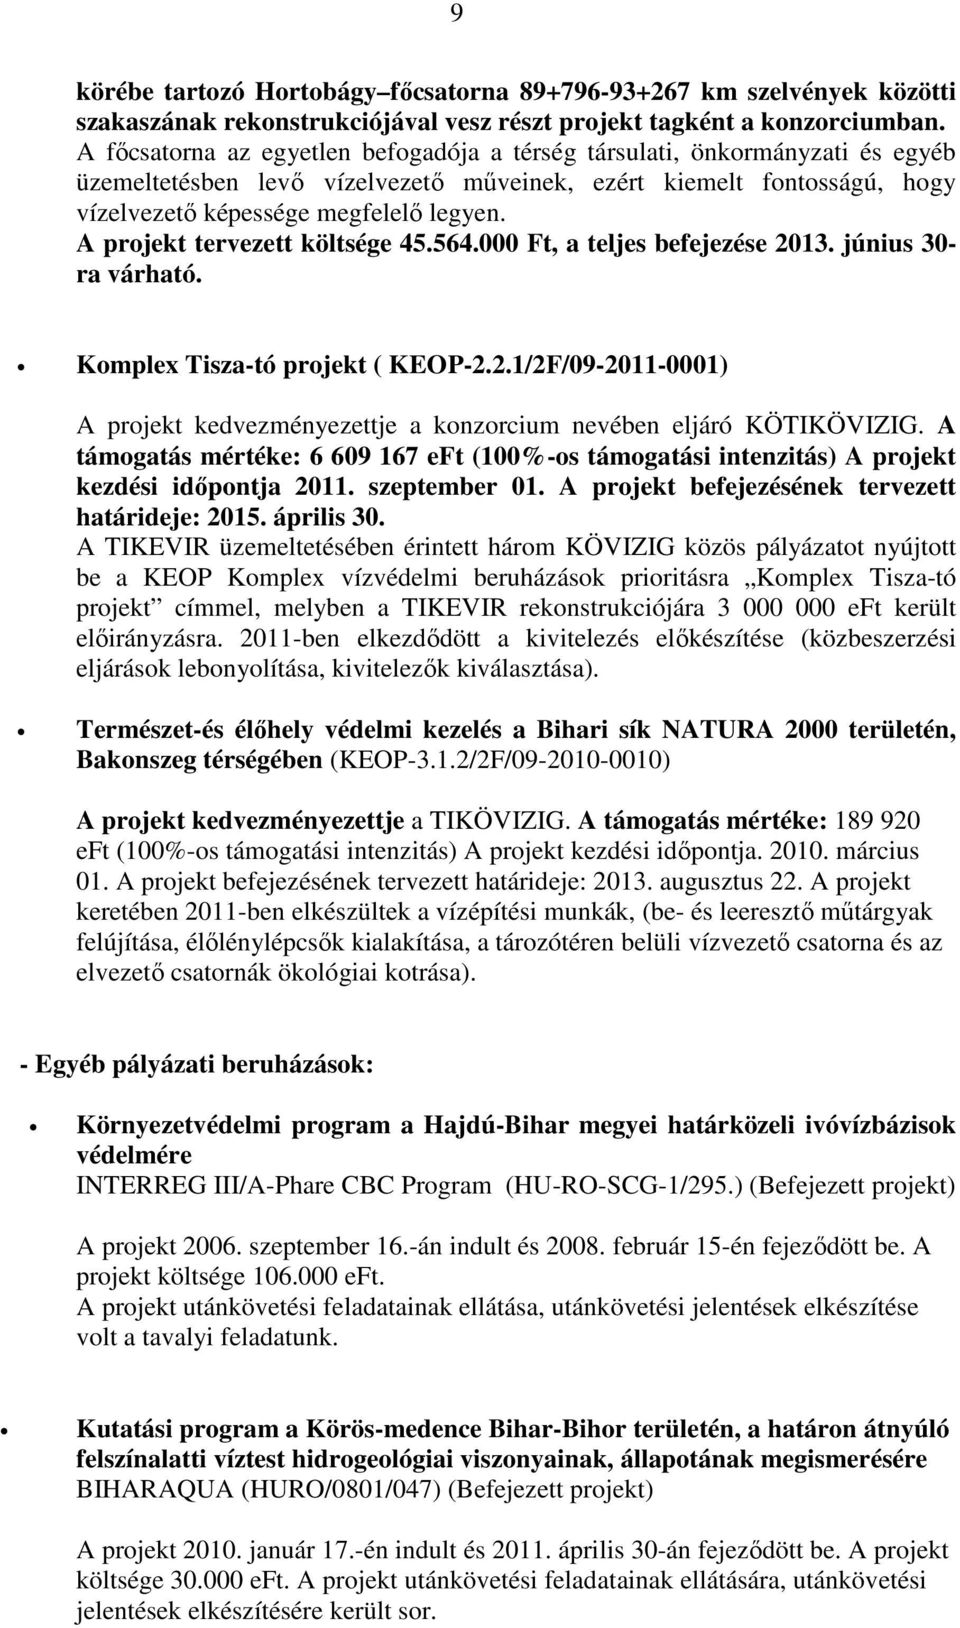 A projekt tervezett költsége 45.564.000 Ft, a teljes befejezése 2013. június 30- ra várható. Komplex Tisza-tó projekt ( KEOP-2.2.1/2F/09-2011-0001) A projekt kedvezményezettje a konzorcium nevében eljáró KÖTIKÖVIZIG.